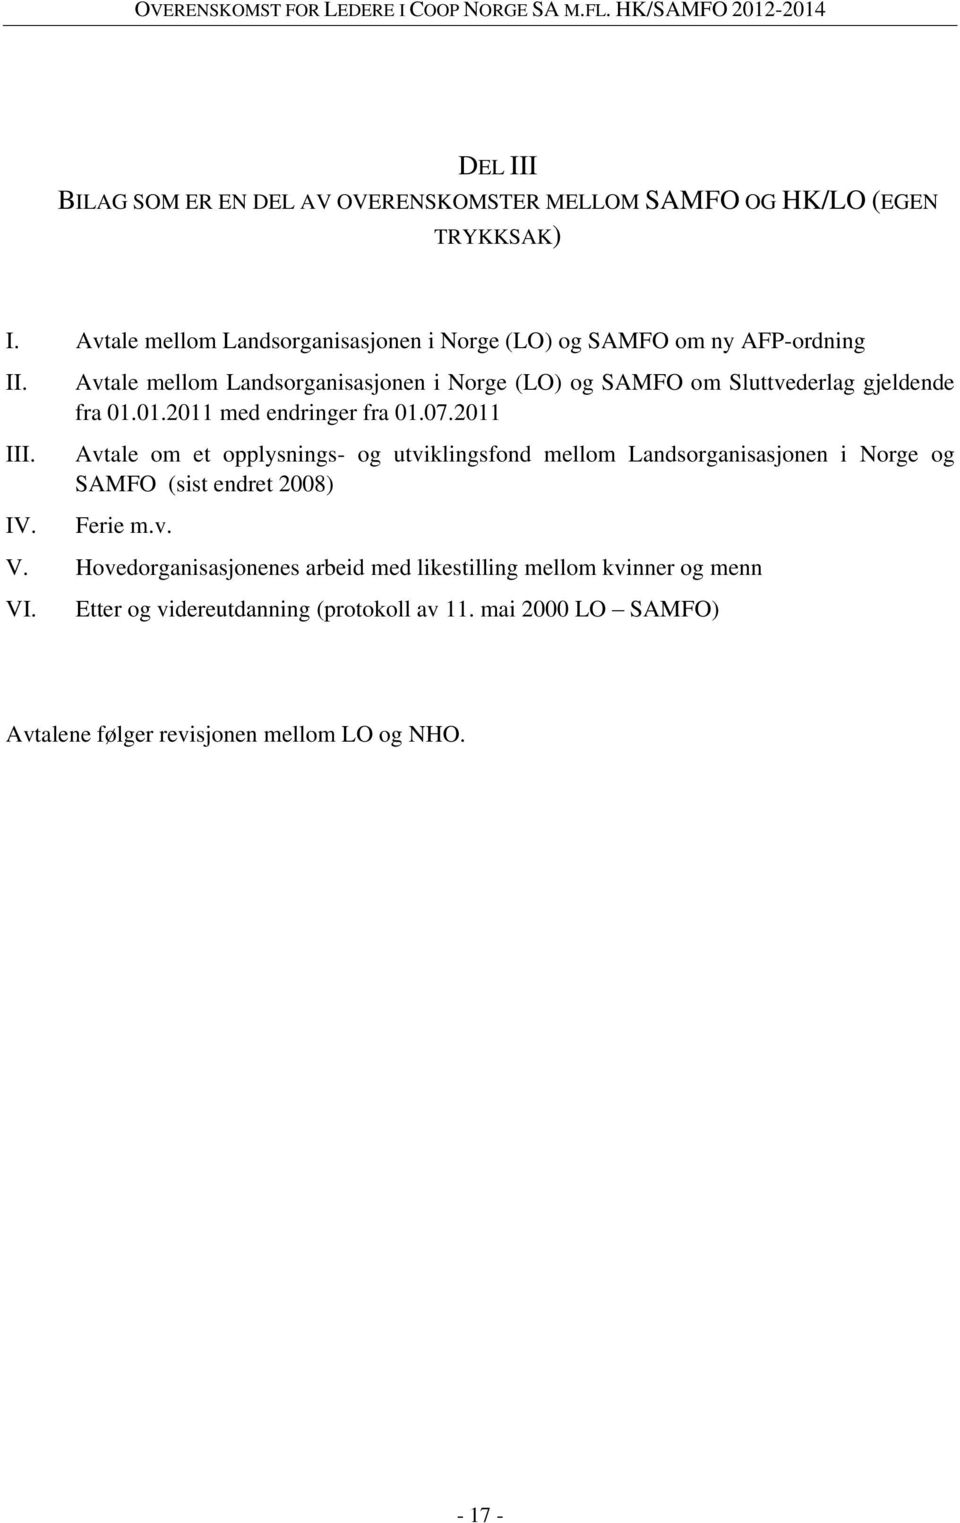 Avtale mellom Landsorganisasjonen i Norge (LO) og SAMFO om Sluttvederlag gjeldende fra 01.01.2011 med endringer fra 01.07.